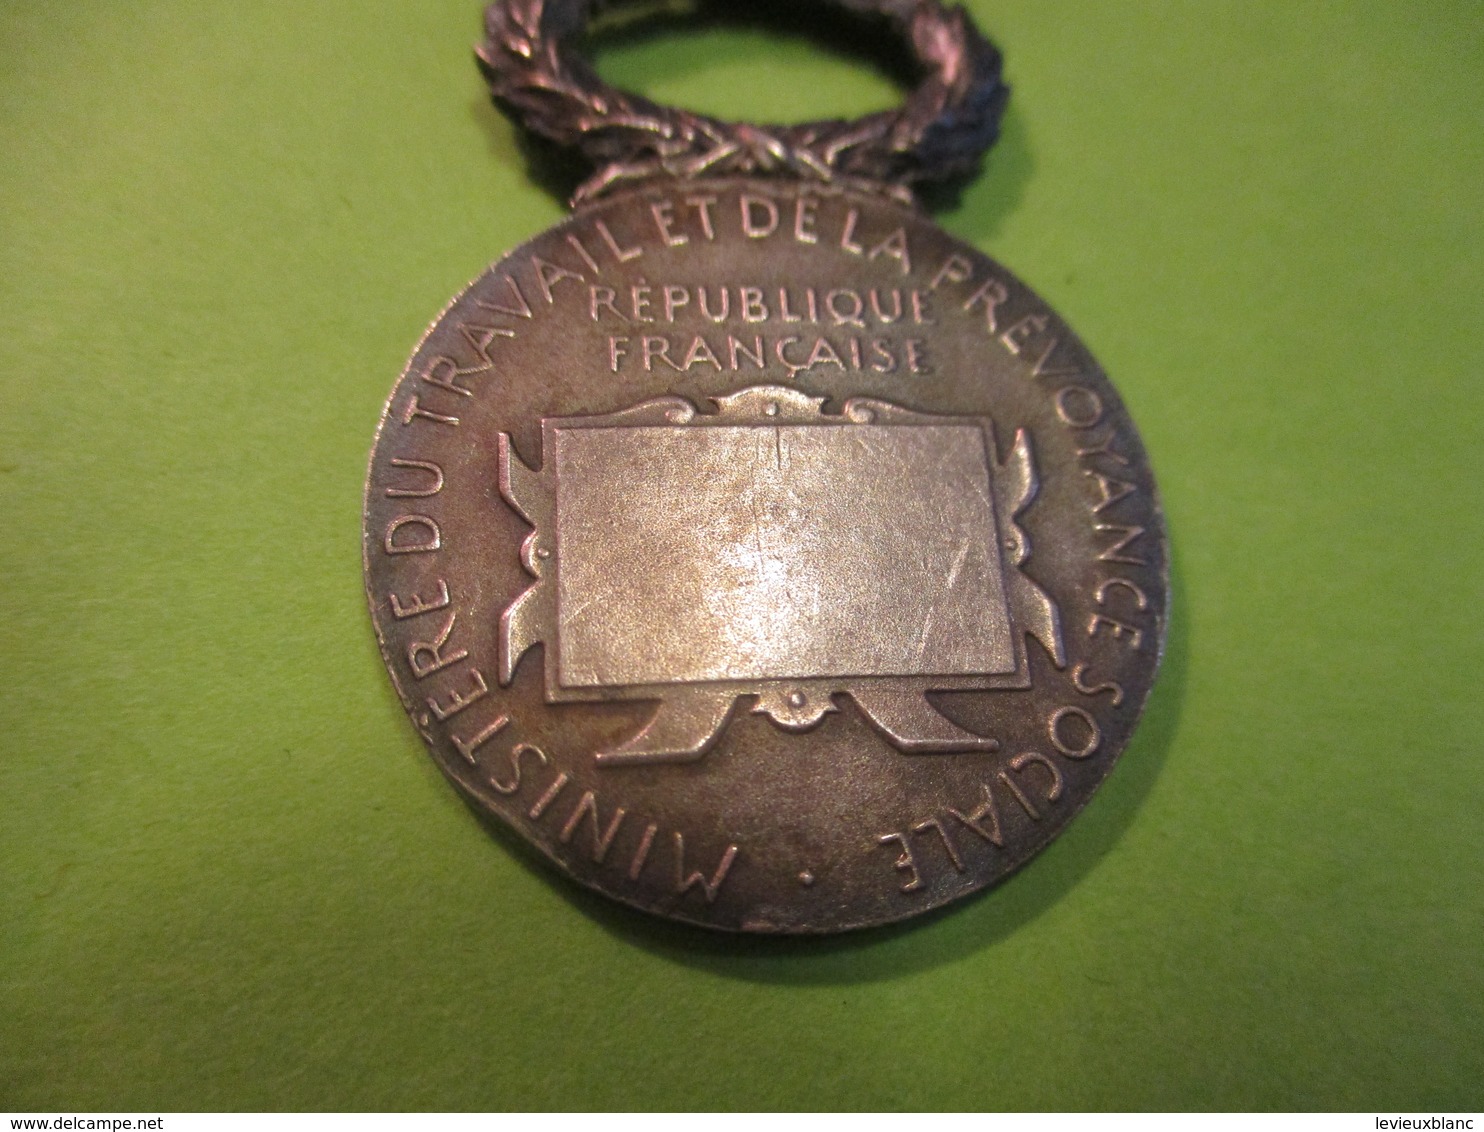 Médaille/République Française/Minist.Travail Et Prév. Sociale/Soc De Secours Mutuels/O.ROTY / Vers 1910-1930    MED318 - Francia